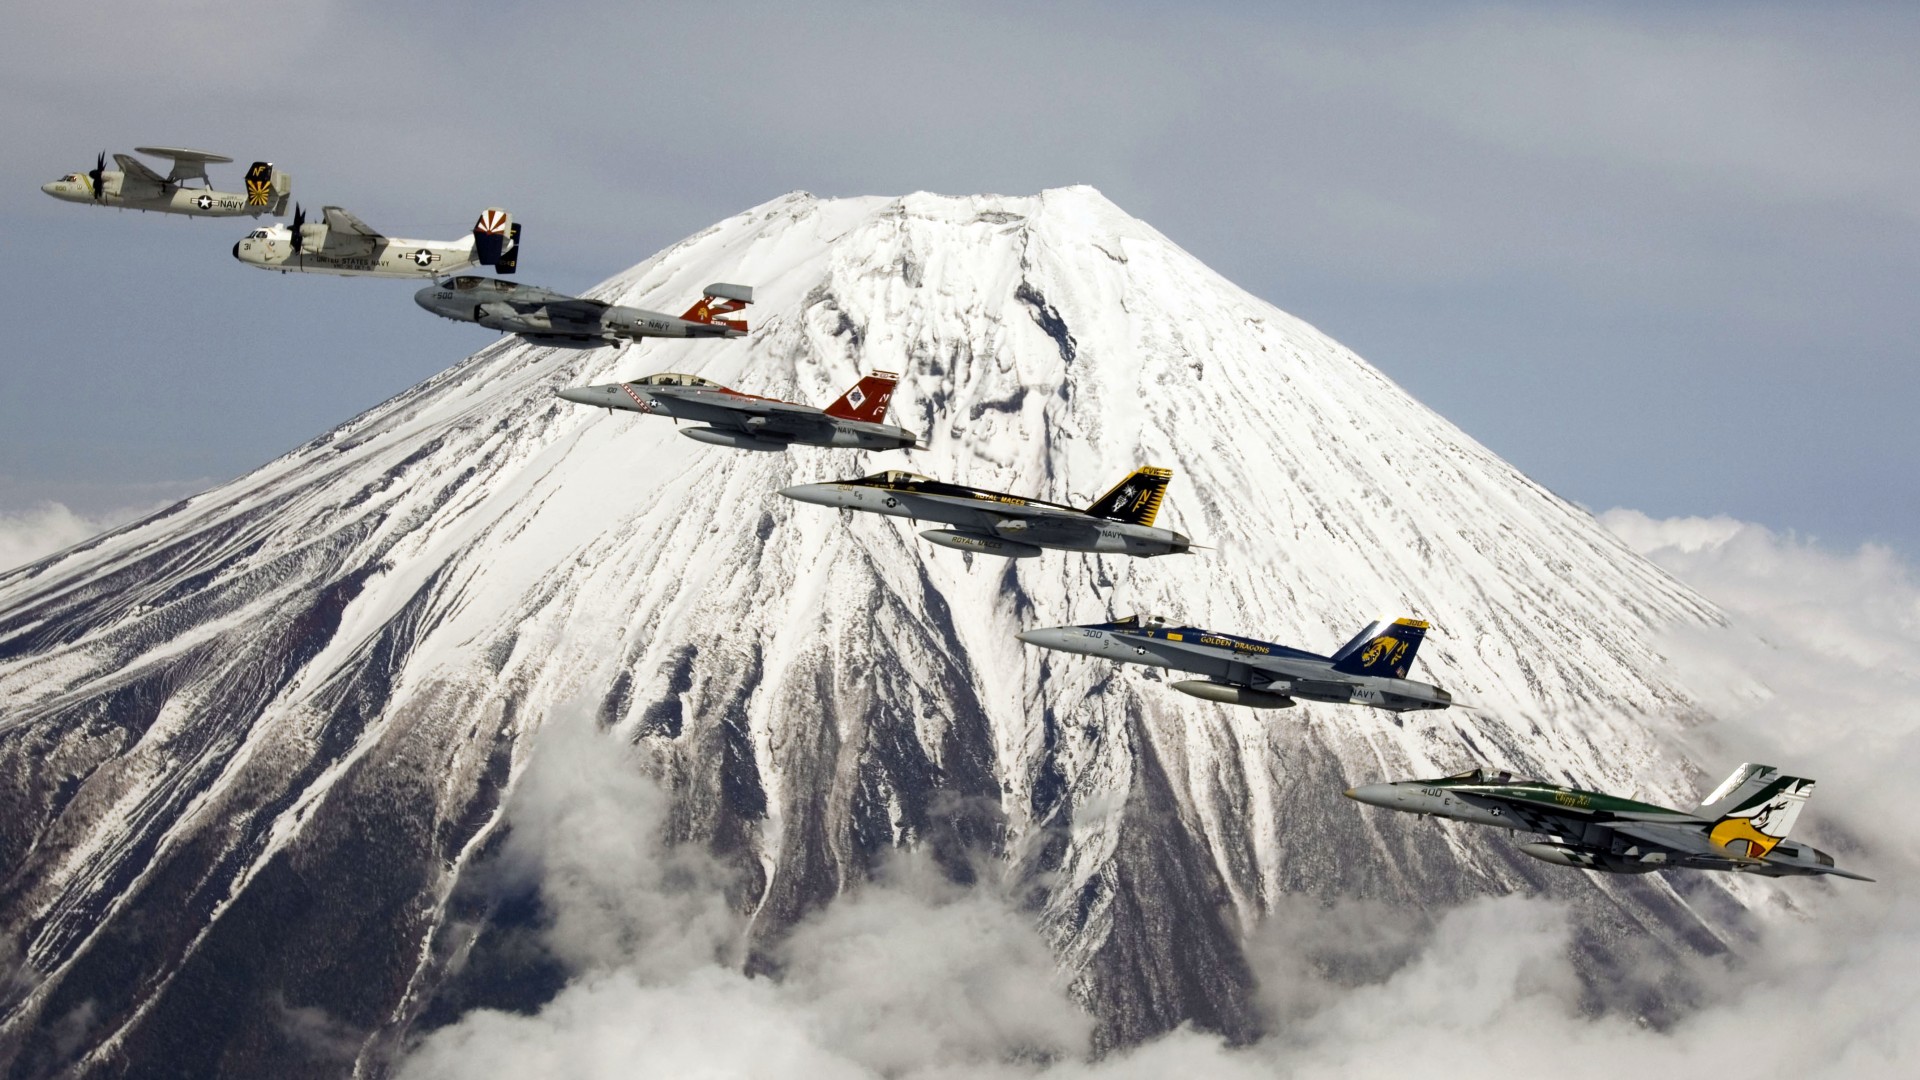 U.S. Navy, aircraft, carrier, jet, fighter, mountain, Fuji, Japan (horizontal)